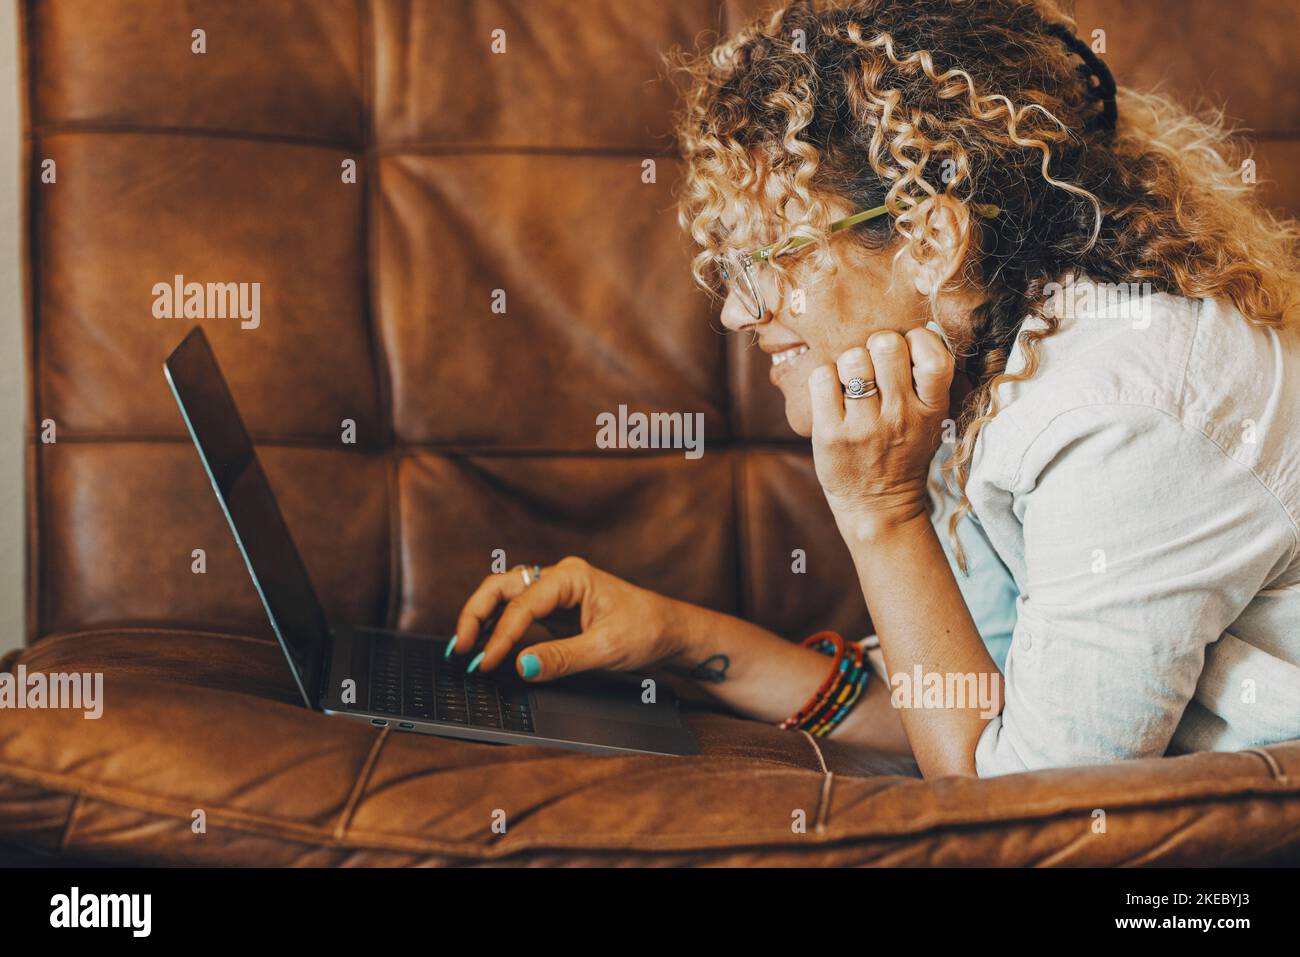 Online-Suche im Web Konzept Menschen Aktivität. Glückliche Frau lächelt vor einem Computer, der auf dem Sofa liegt. Eine weibliche Person, die ihren Laptop für Freizeit oder Beruf benutzt, legt sich bequem auf die Couch Stockfoto